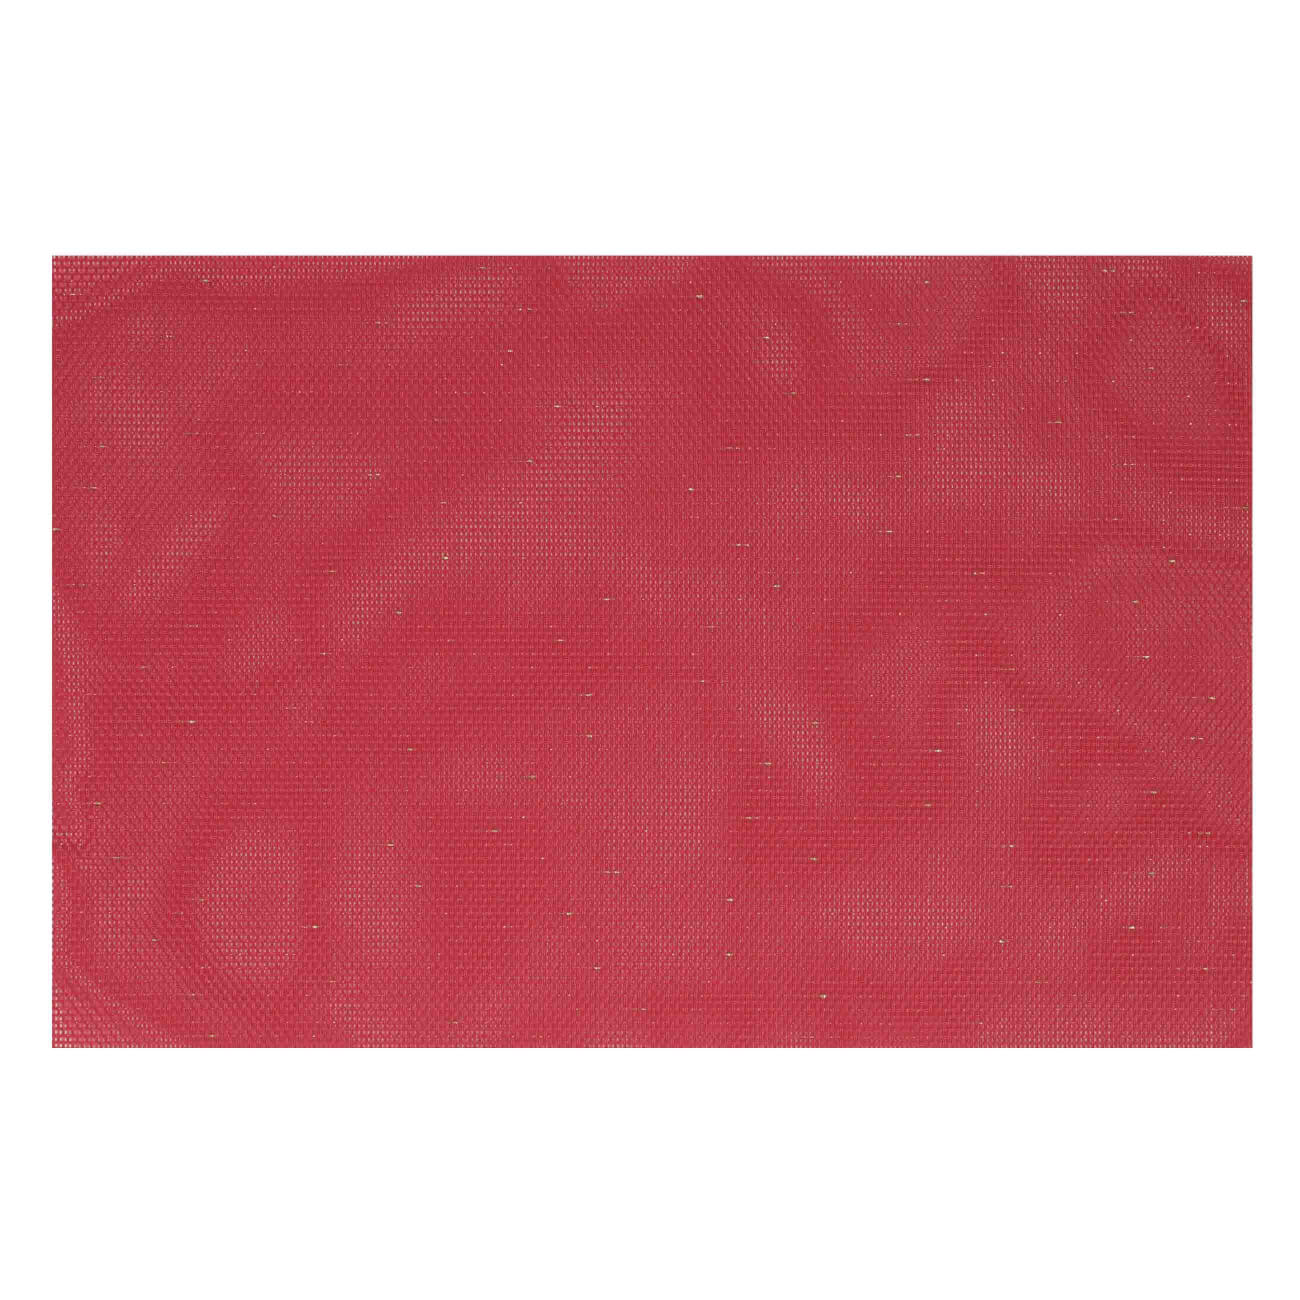 Салфетка под приборы, 30х45 см, ПВХ/полиэстер, прямоугольная, красная, Solid форма для выпечки vitrinor прямоугольная красная 35 22 5 см 01400002